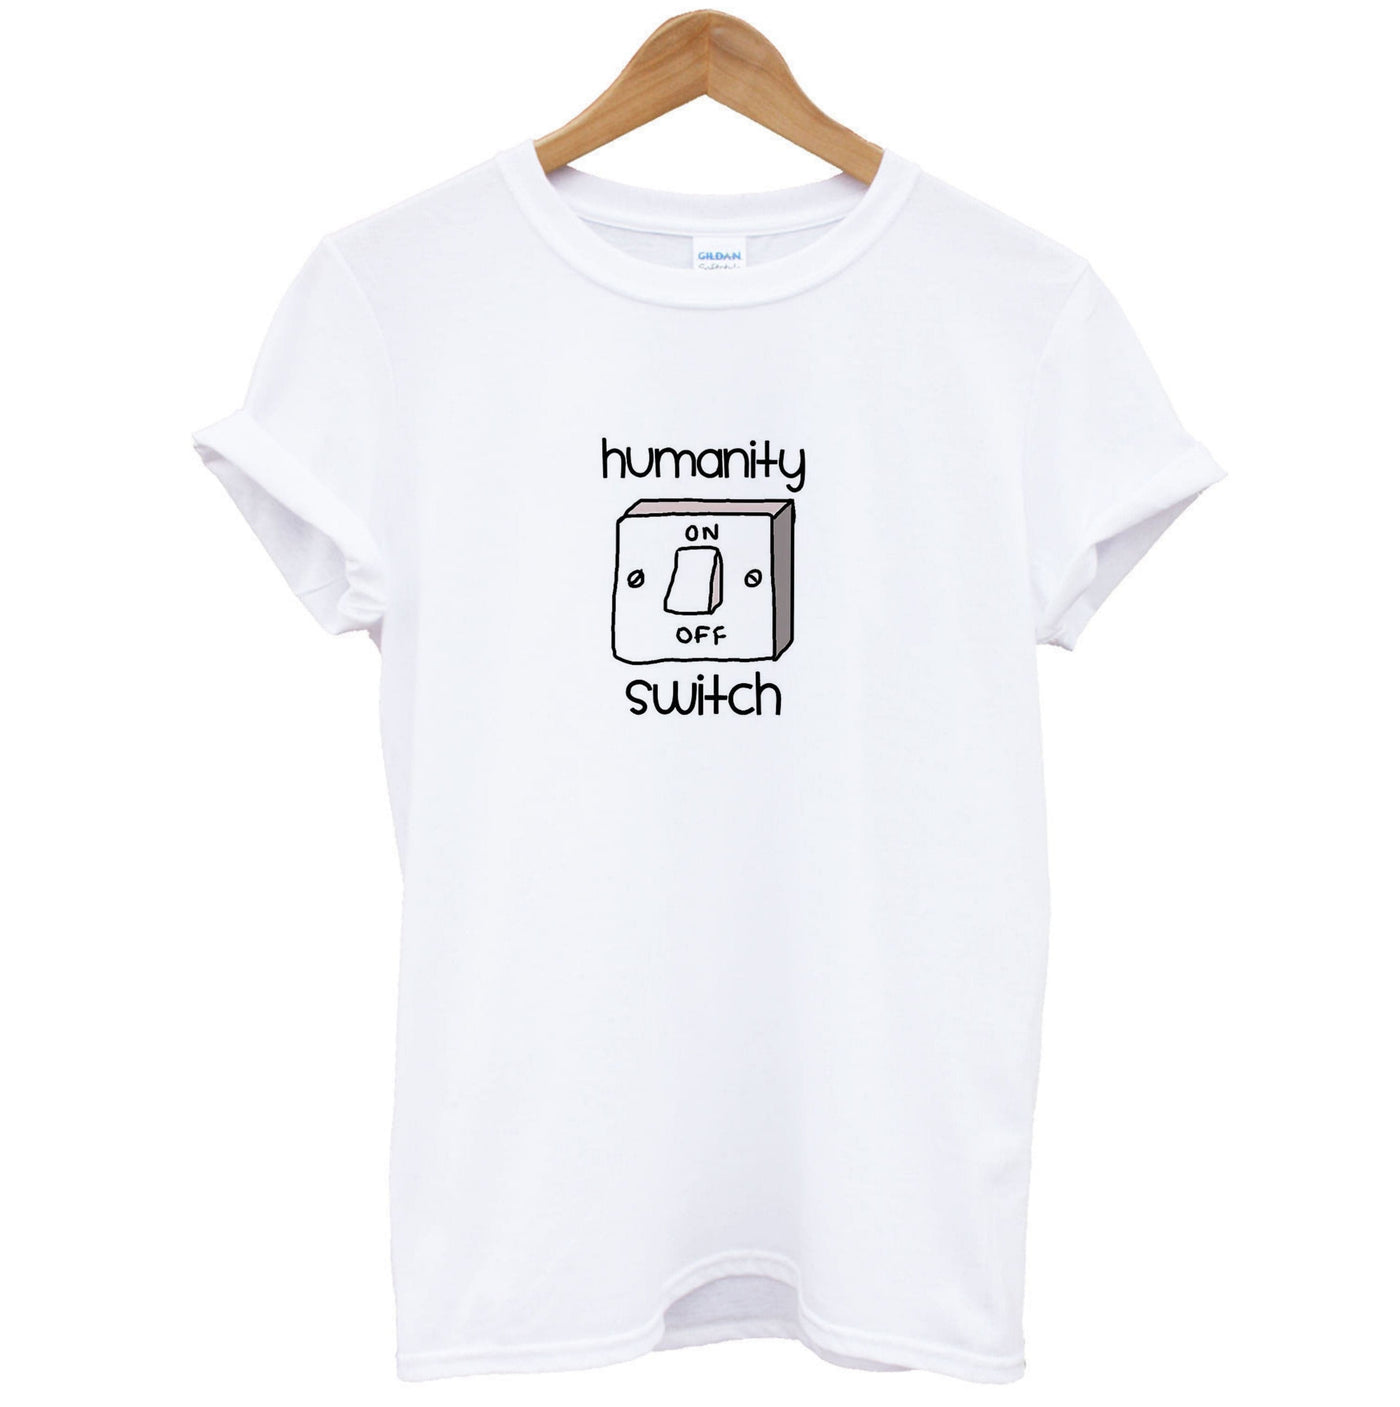 Humanity Switch - Vampire Diaries T-Shirt